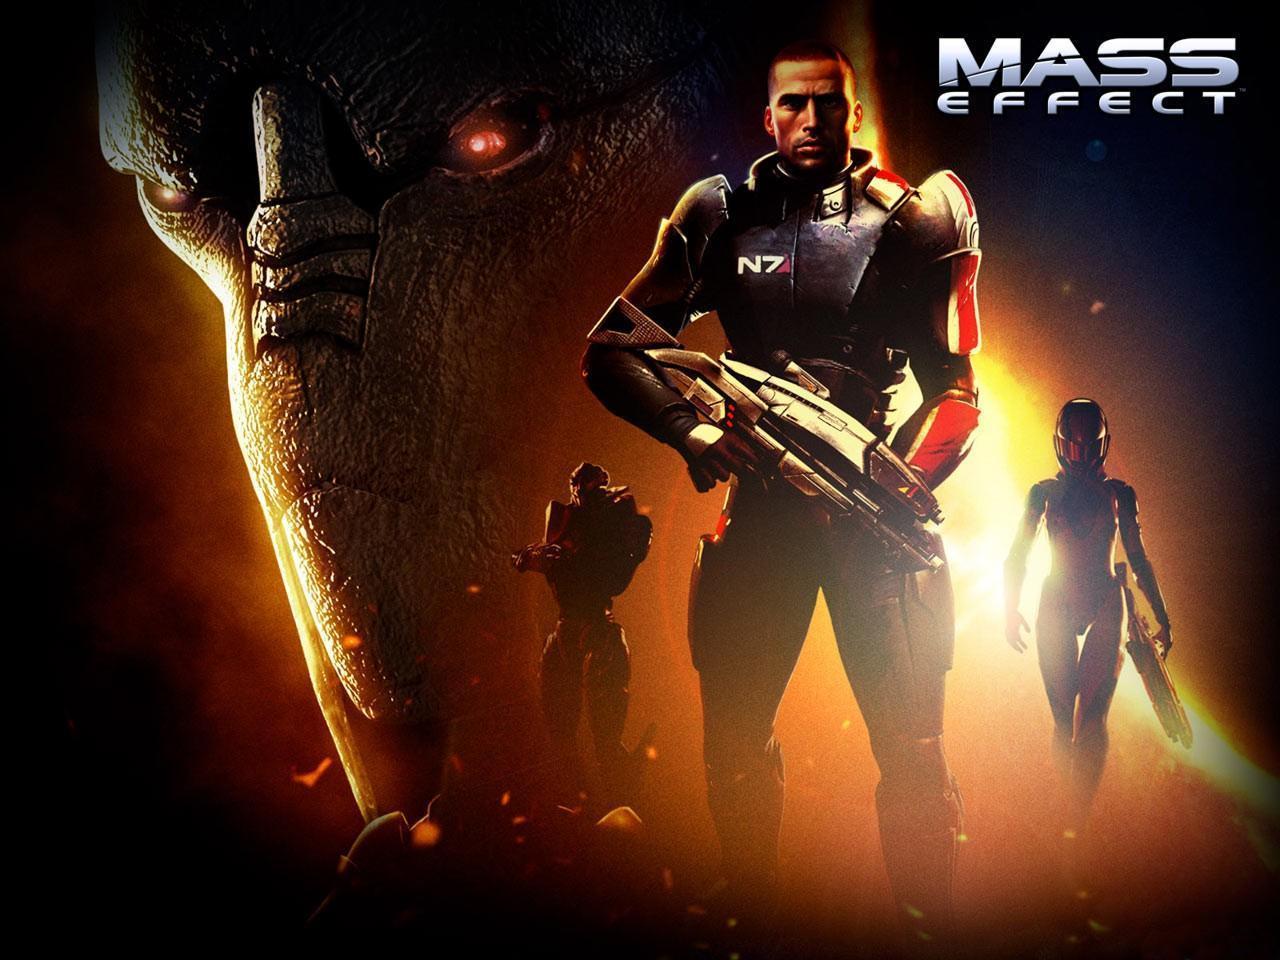 Wallpaper Mass Effect!